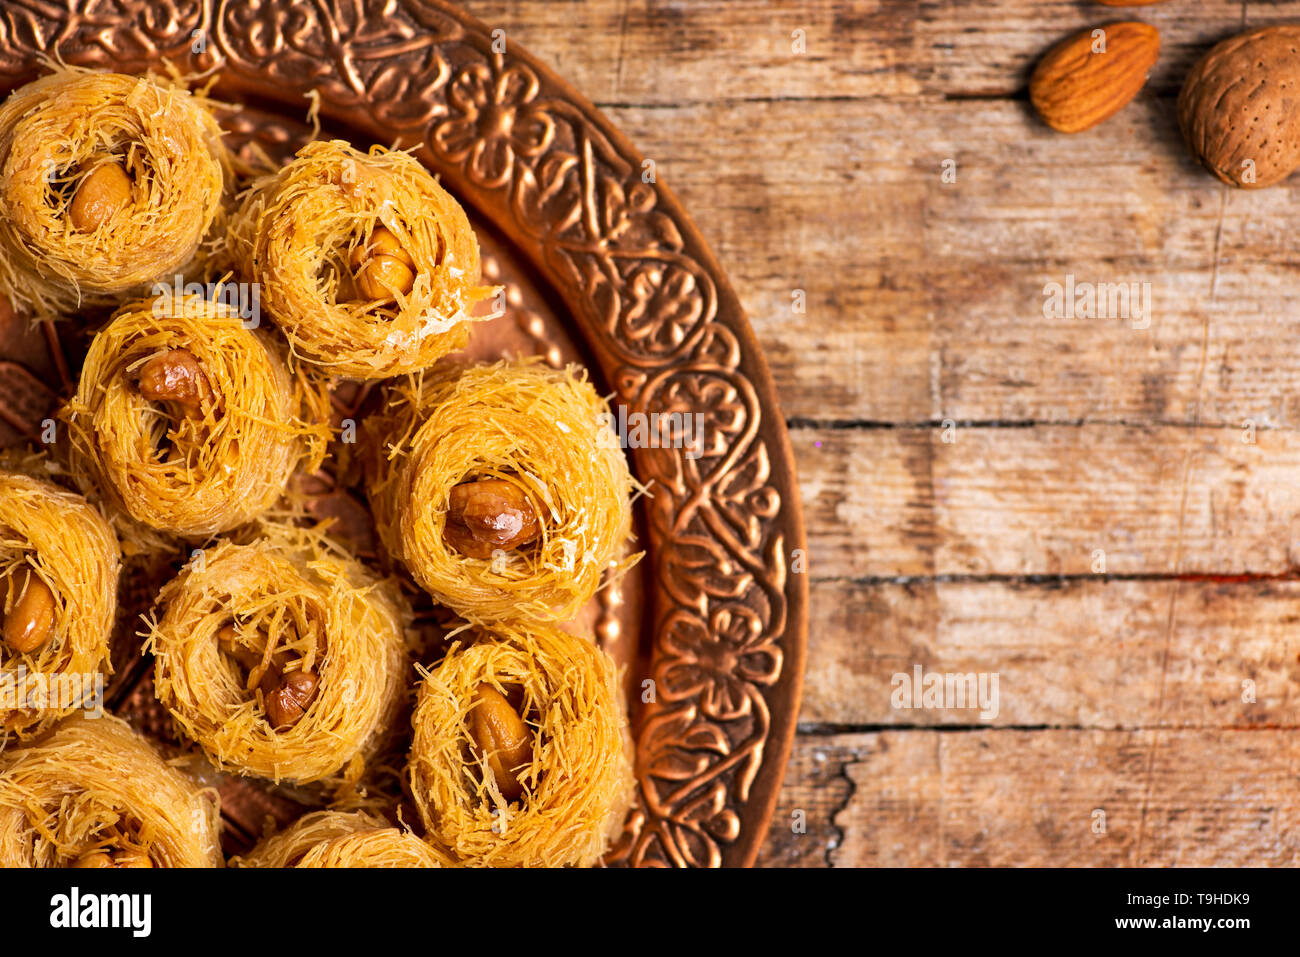 Arabisch kadayif baklava Dessert mit Cashew-nüssen auf einer Platte Stockfoto